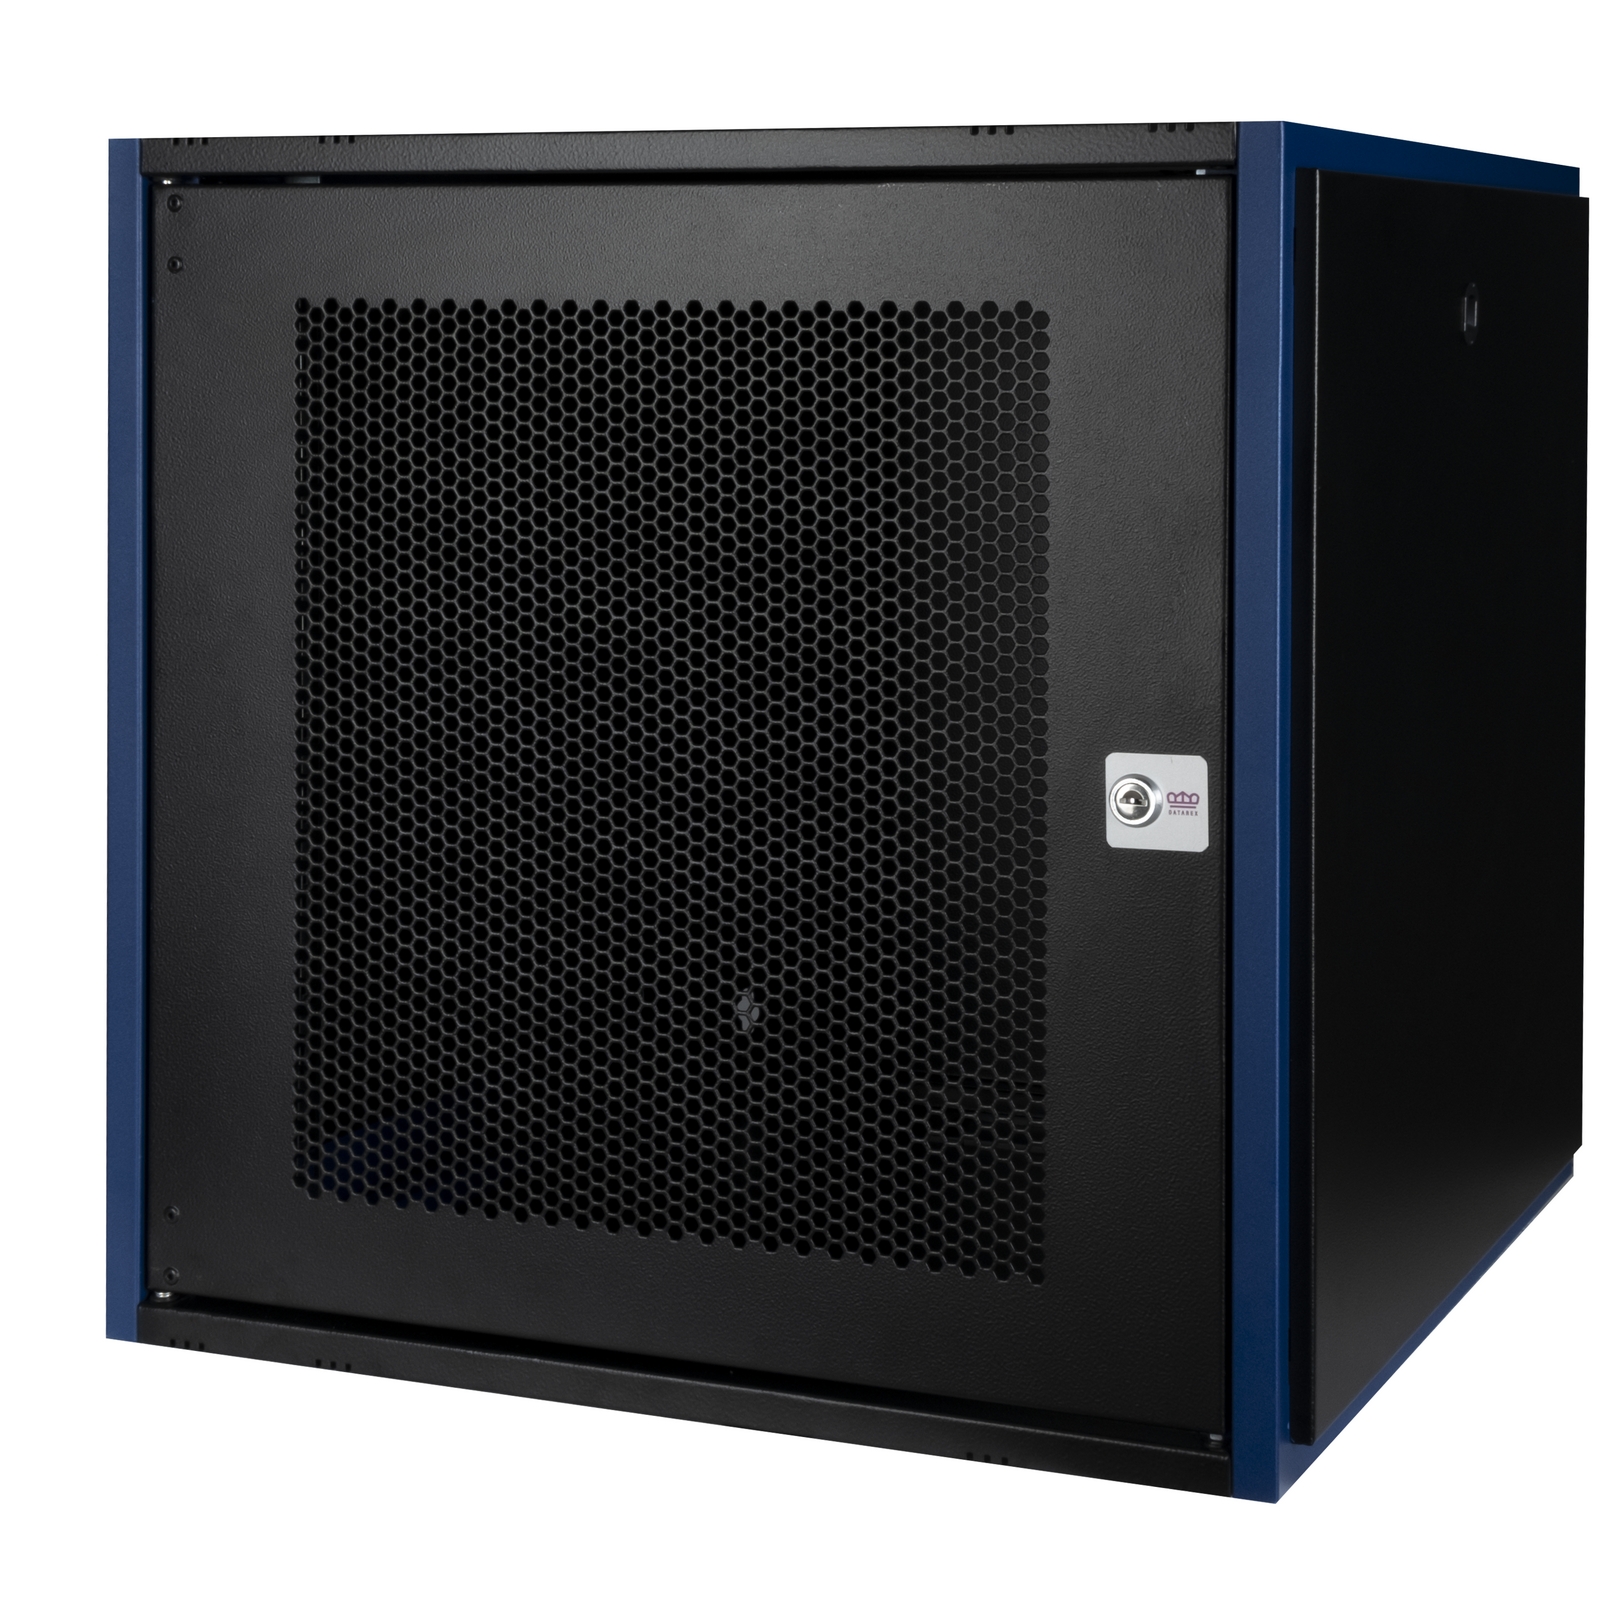 Шкаф телекоммуникационный настенный 12U 600x600 мм, перфорация/металл, черный, разборный, Datarex DR-620221 (DR-620221)